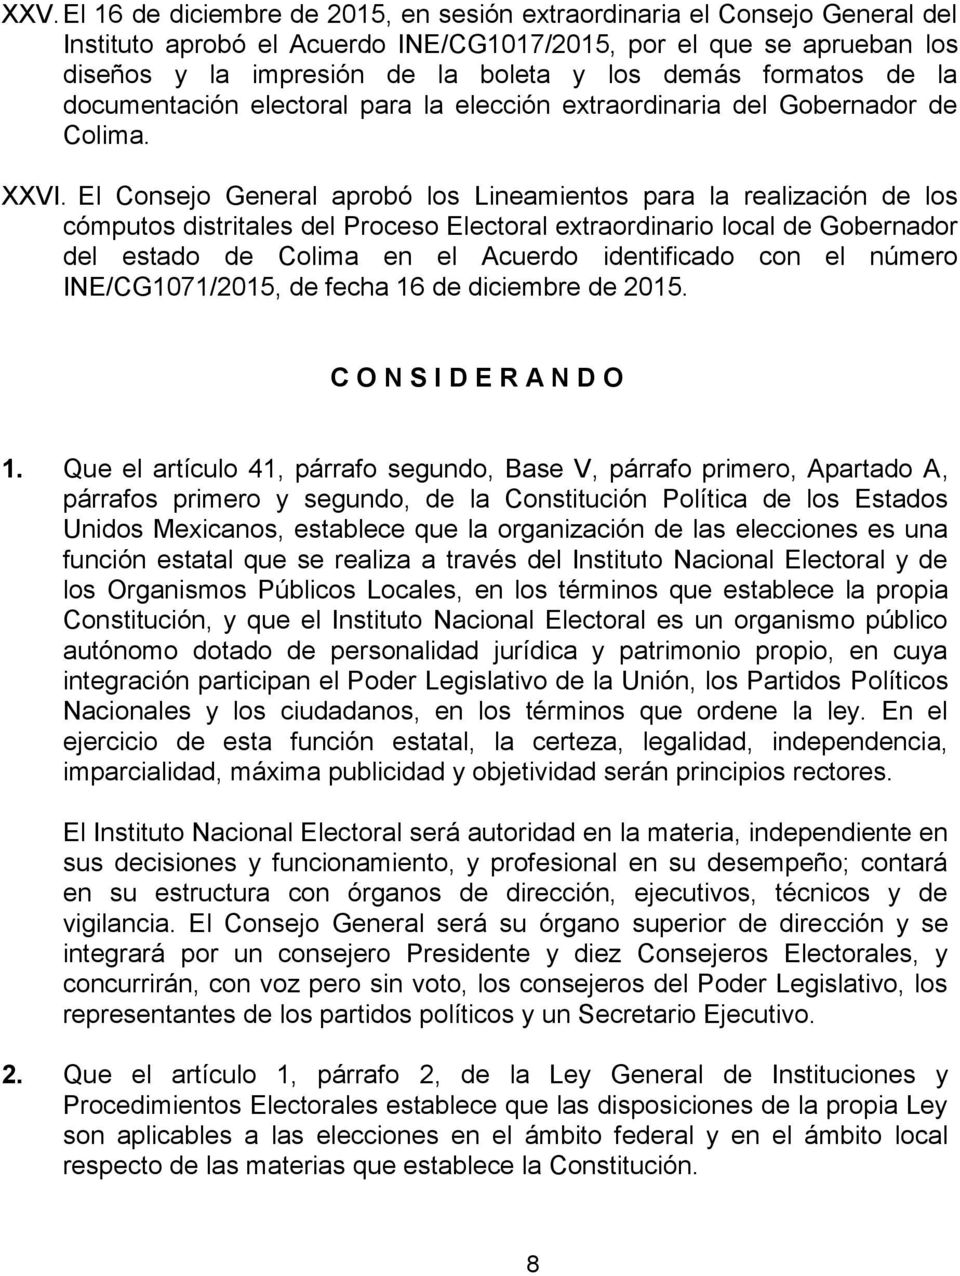 El Consejo General aprobó los Lineamientos para la realización de los cómputos distritales del Proceso Electoral extraordinario local de Gobernador del estado de Colima en el Acuerdo identificado con